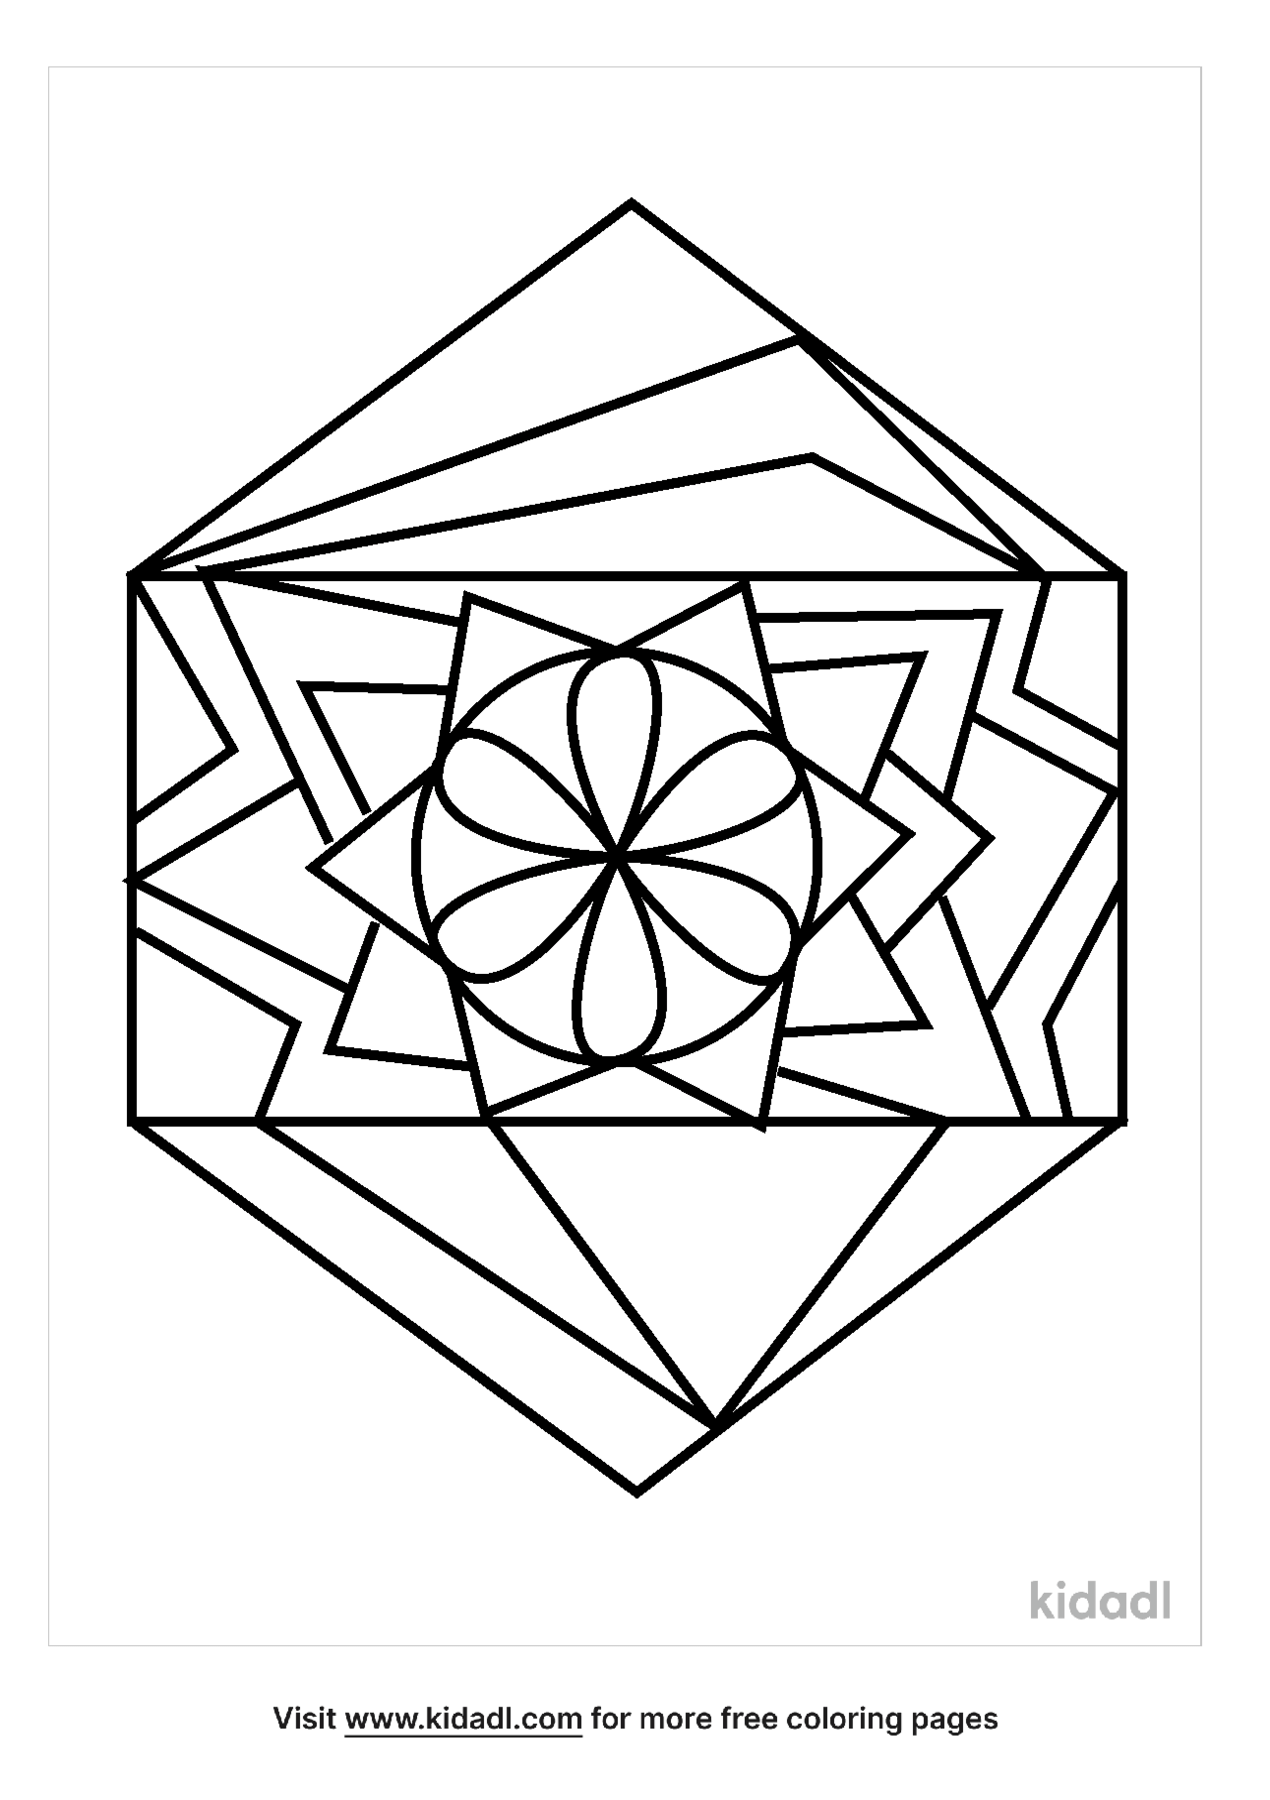 Hexagon Mandala Coloring Pages | Free Mandala Coloring Pages | Kidadl